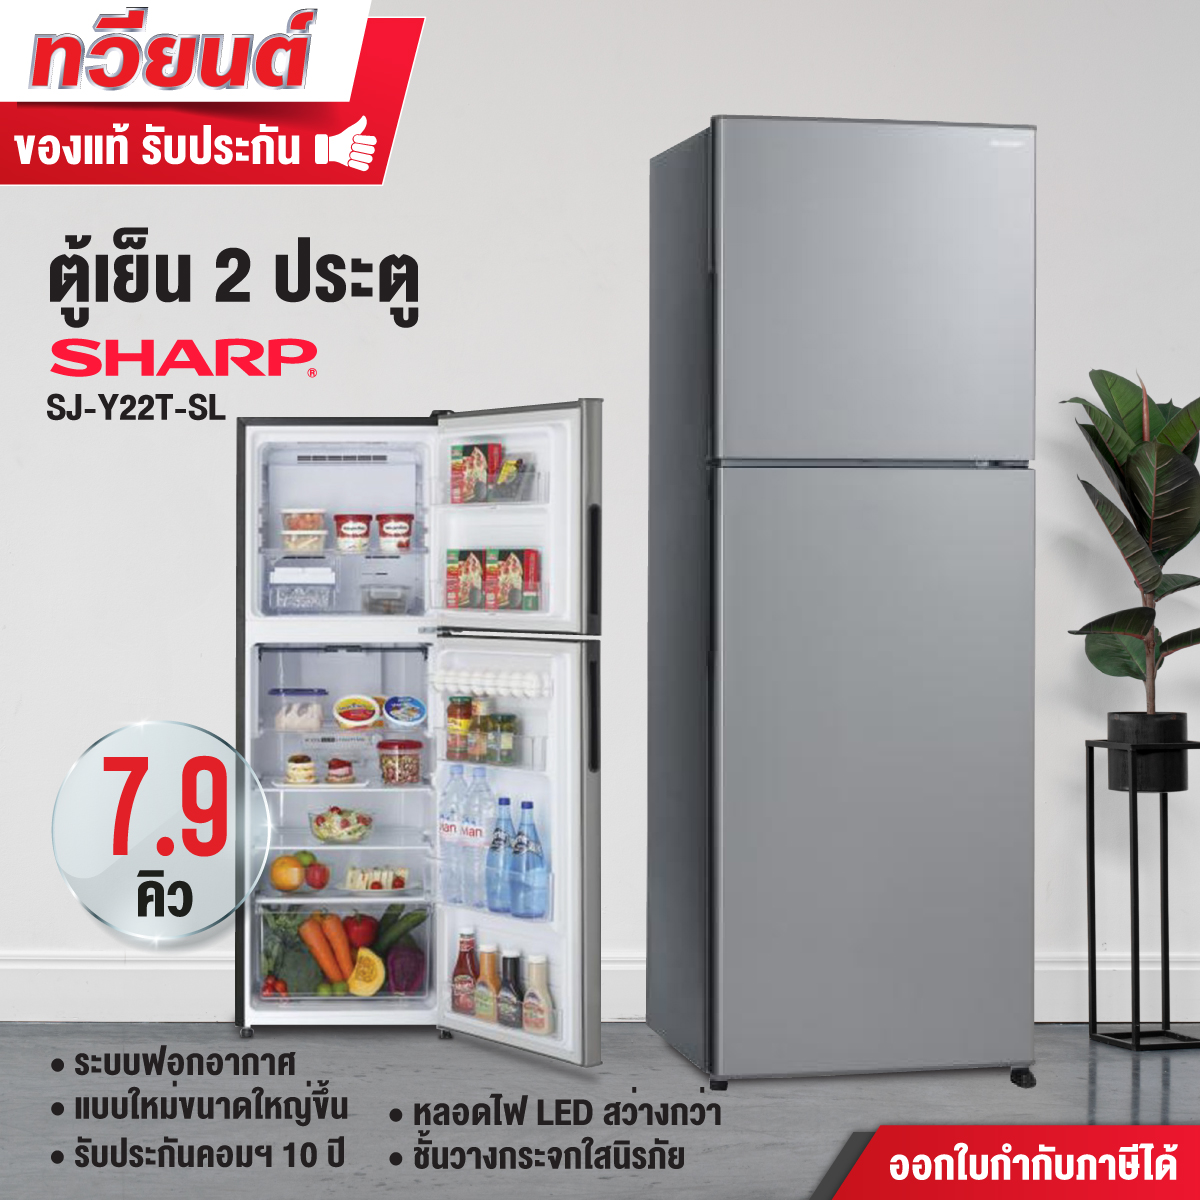 ตู้เย็น Sharp รุ่น SJ-Y22T-SL ขนาดความจุ 7.9 คิว